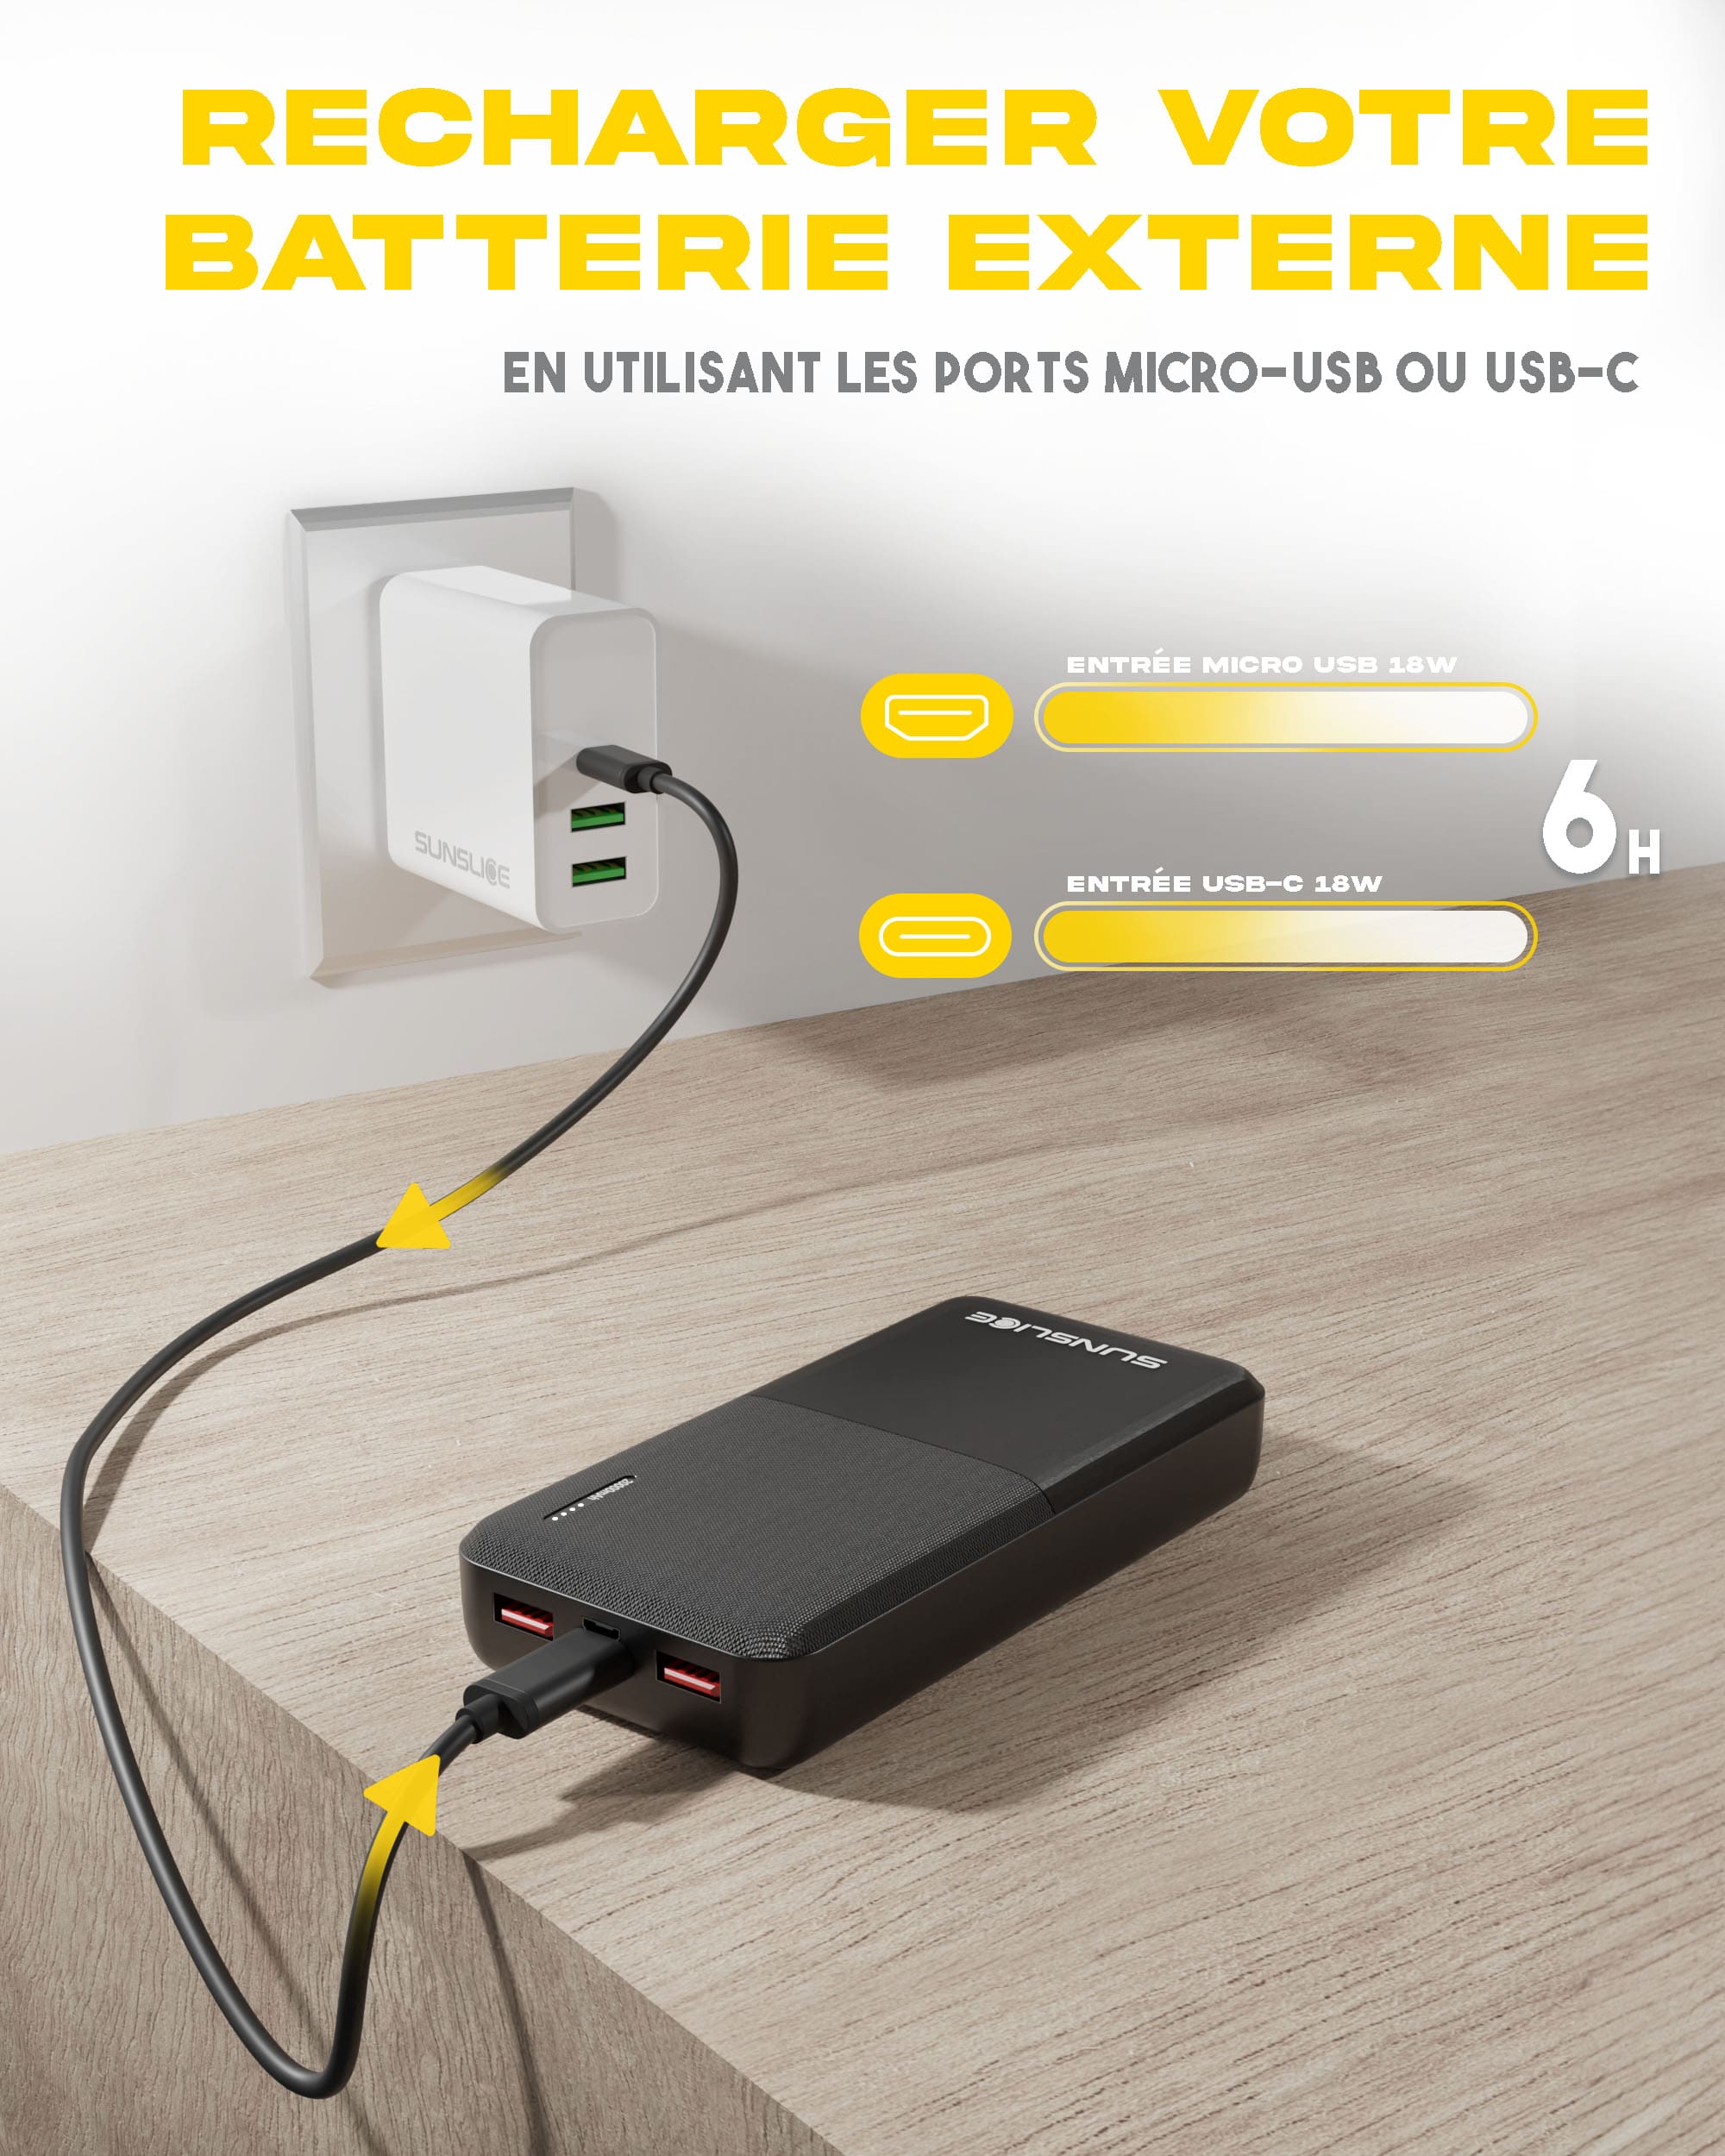 La banque d'énergie gravity 20 peut être rechargée à l'aide du port micro-USB ou du port USB-C